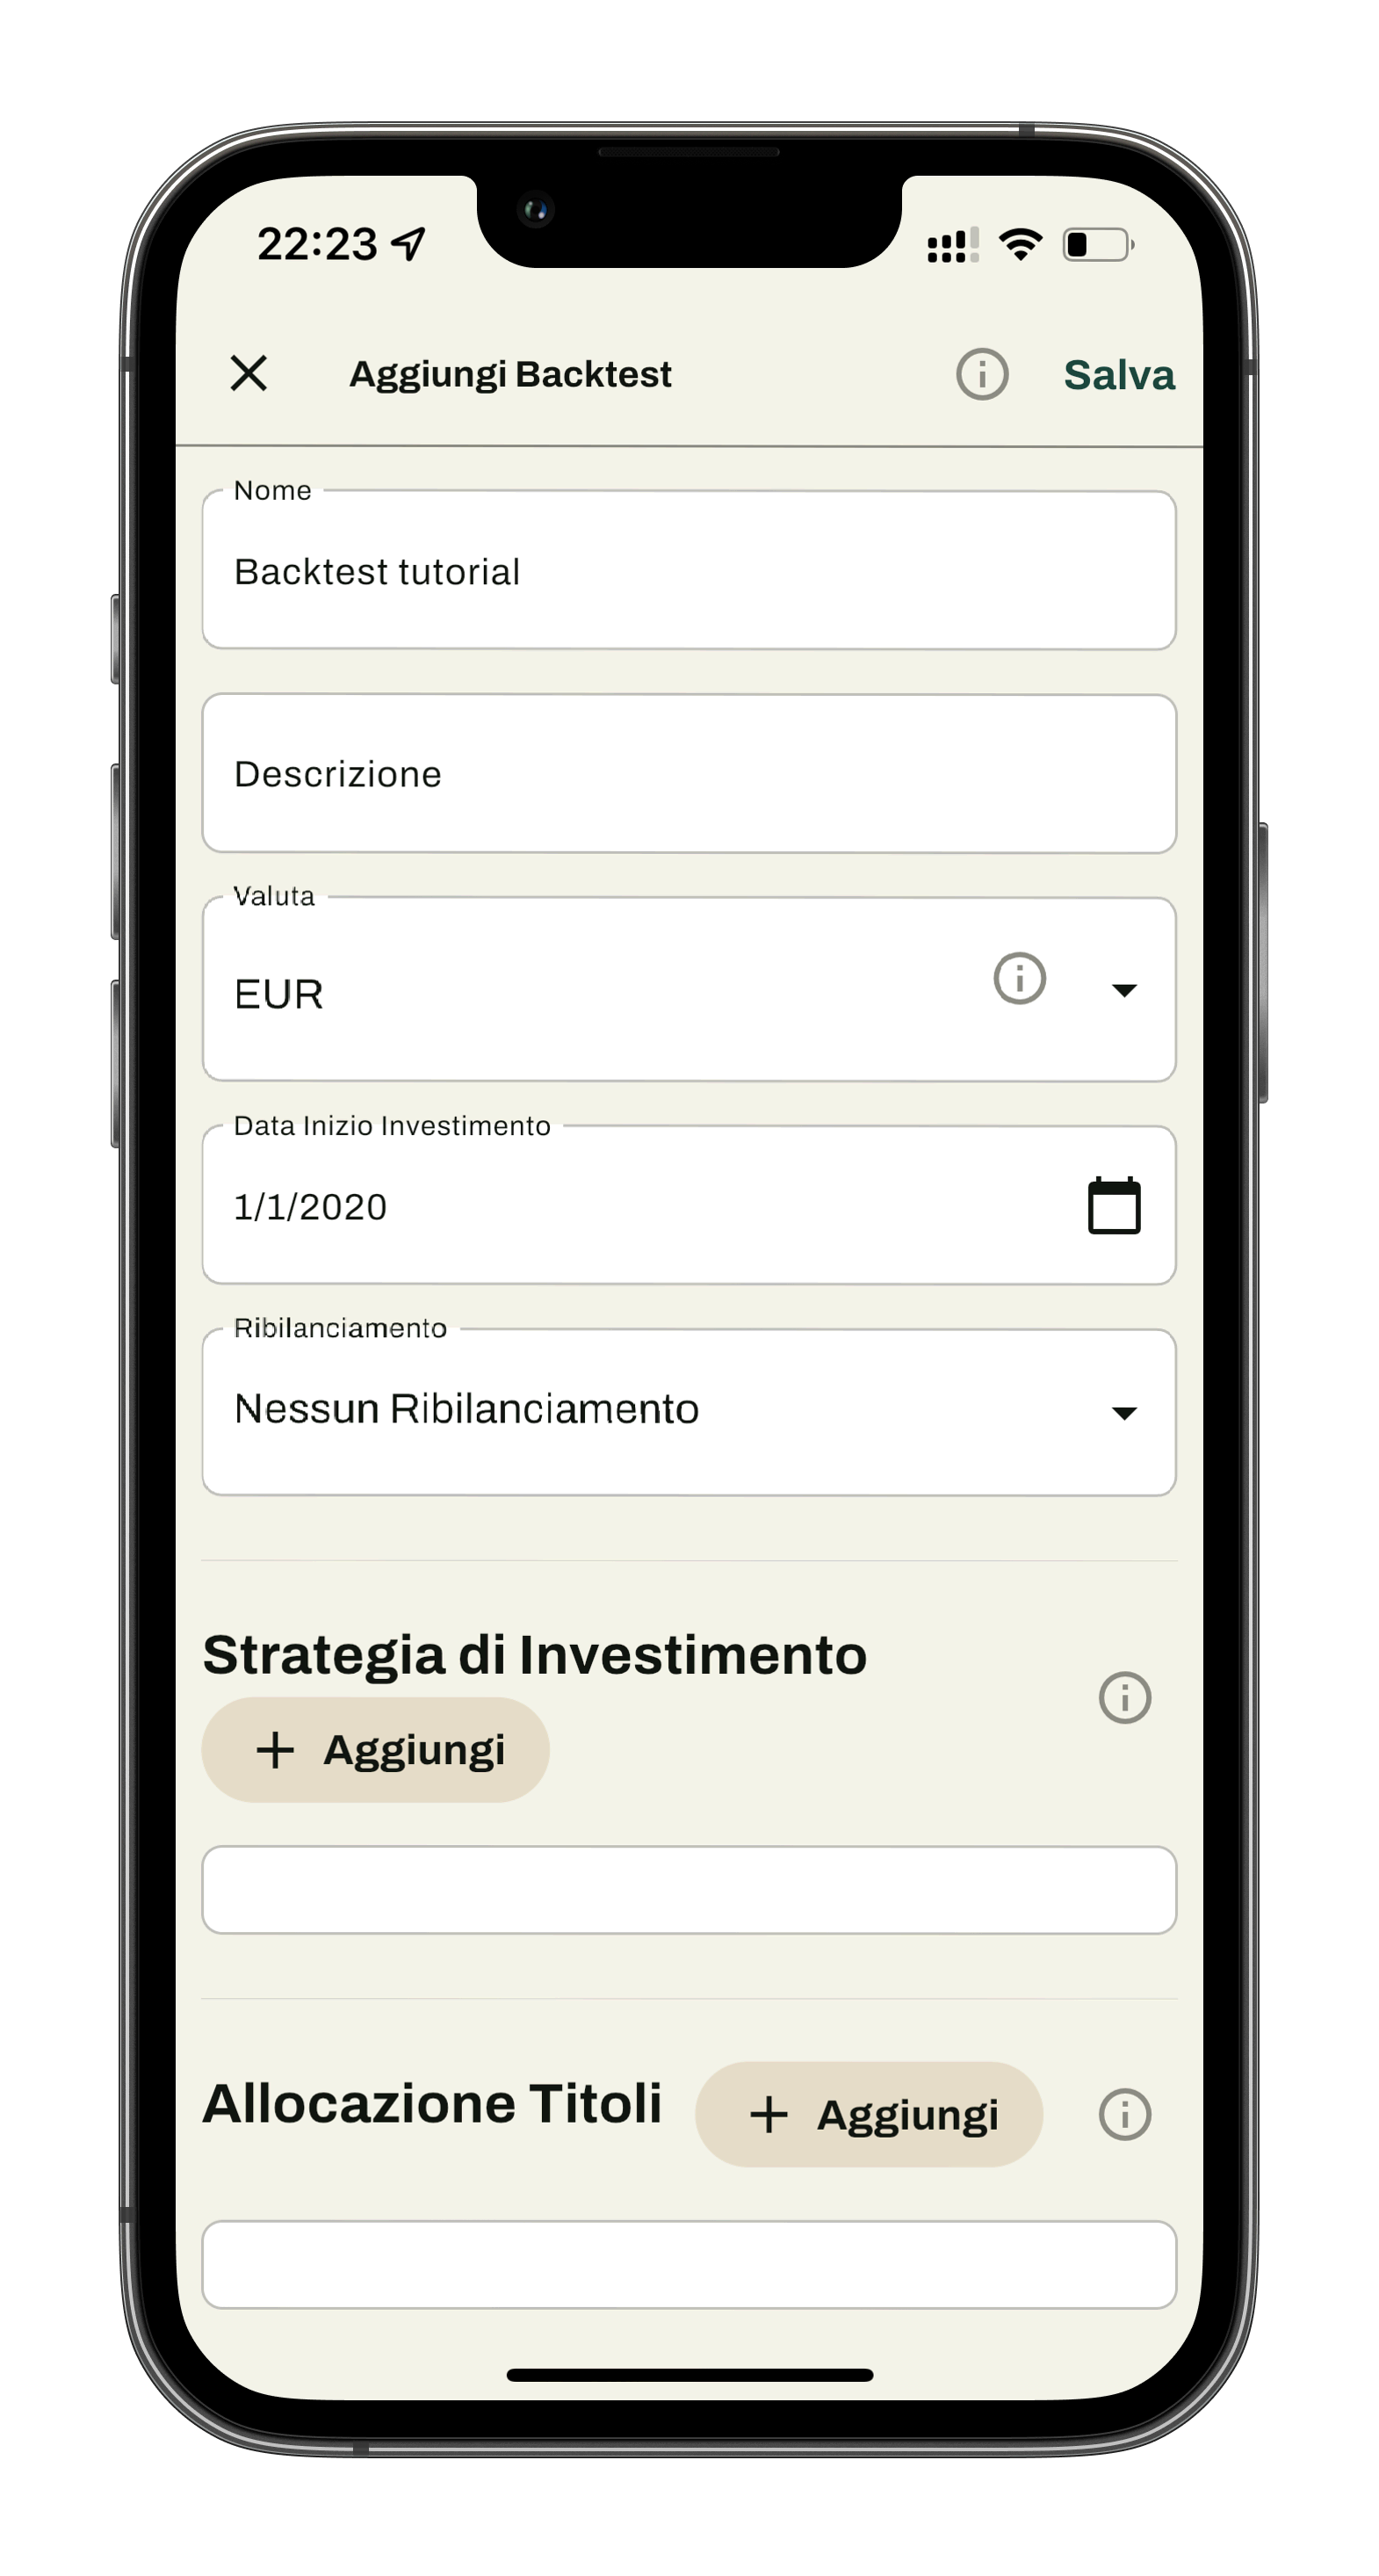 Wallible App tutorial portafoglio ottimizzazione investimenti backtest strategia risparmio analisi